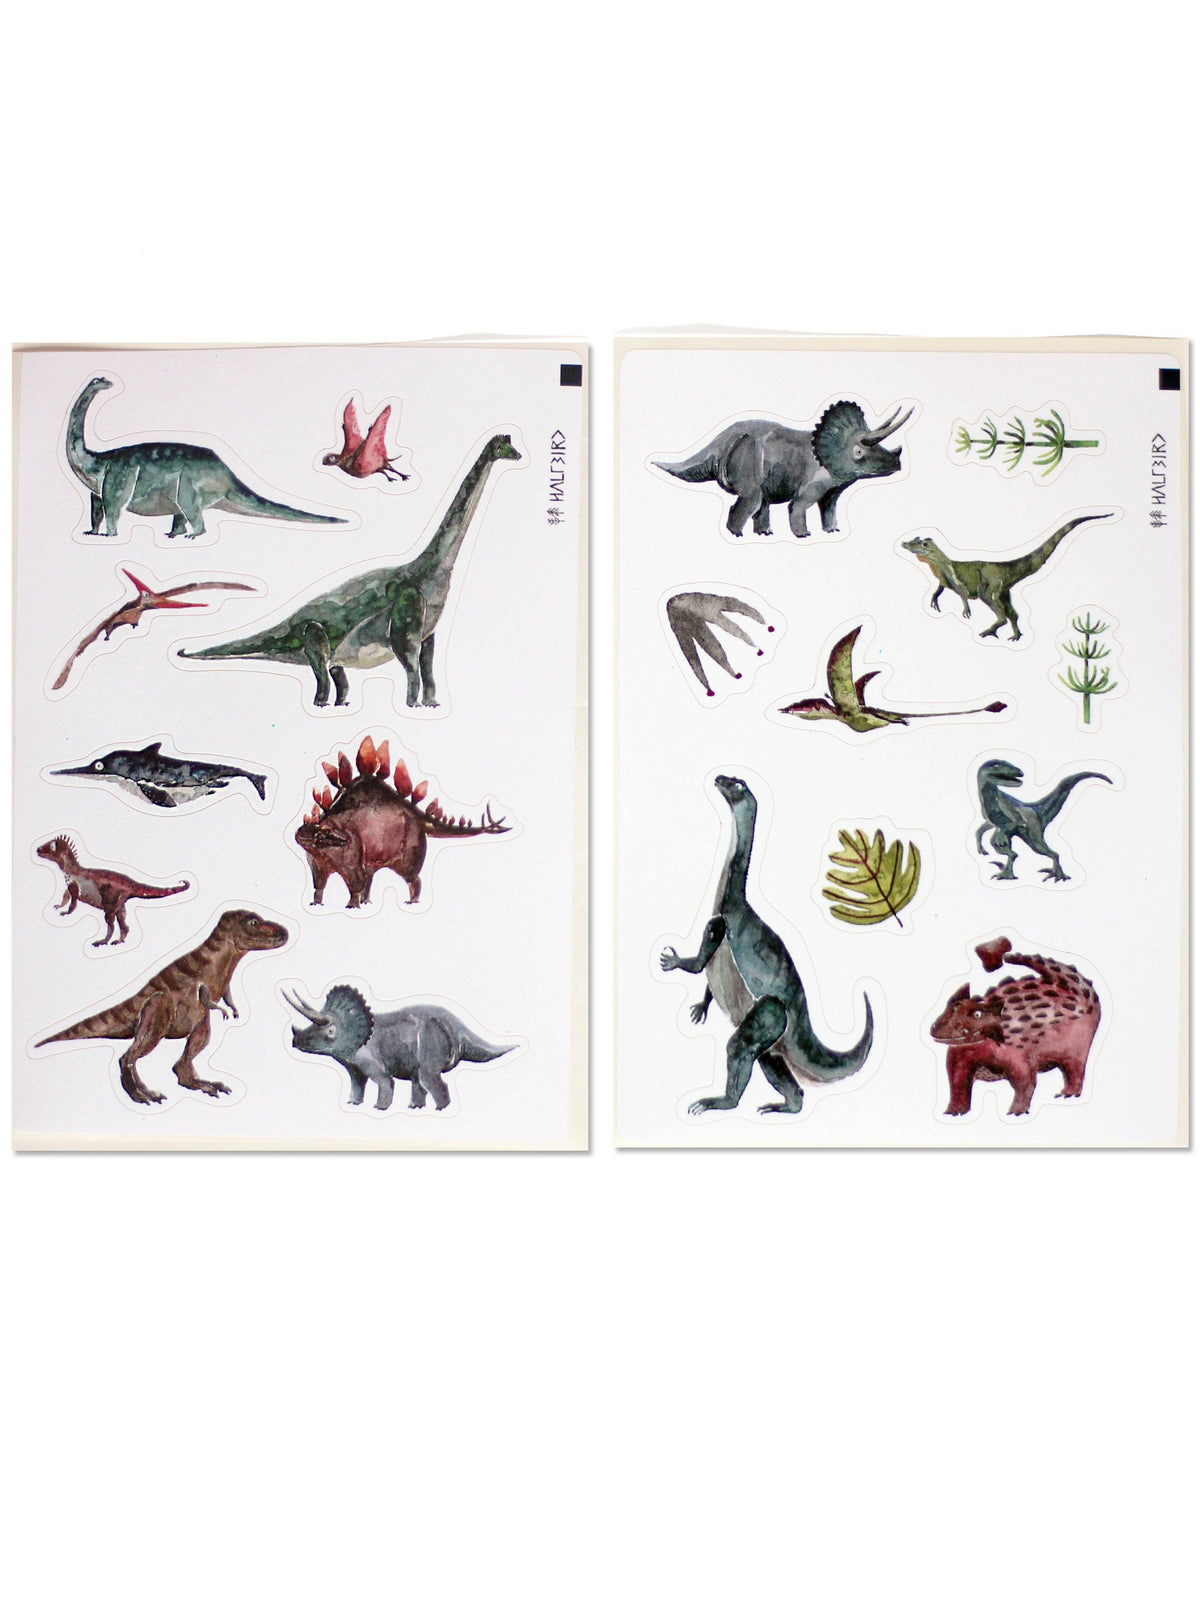 Stickerbögen Dinosaurier aus Recyclingpapier. Mit dabei sind Triceratops, T-Rex, Ankylosaurus, Stegosaurus, Plateosaurus und Co